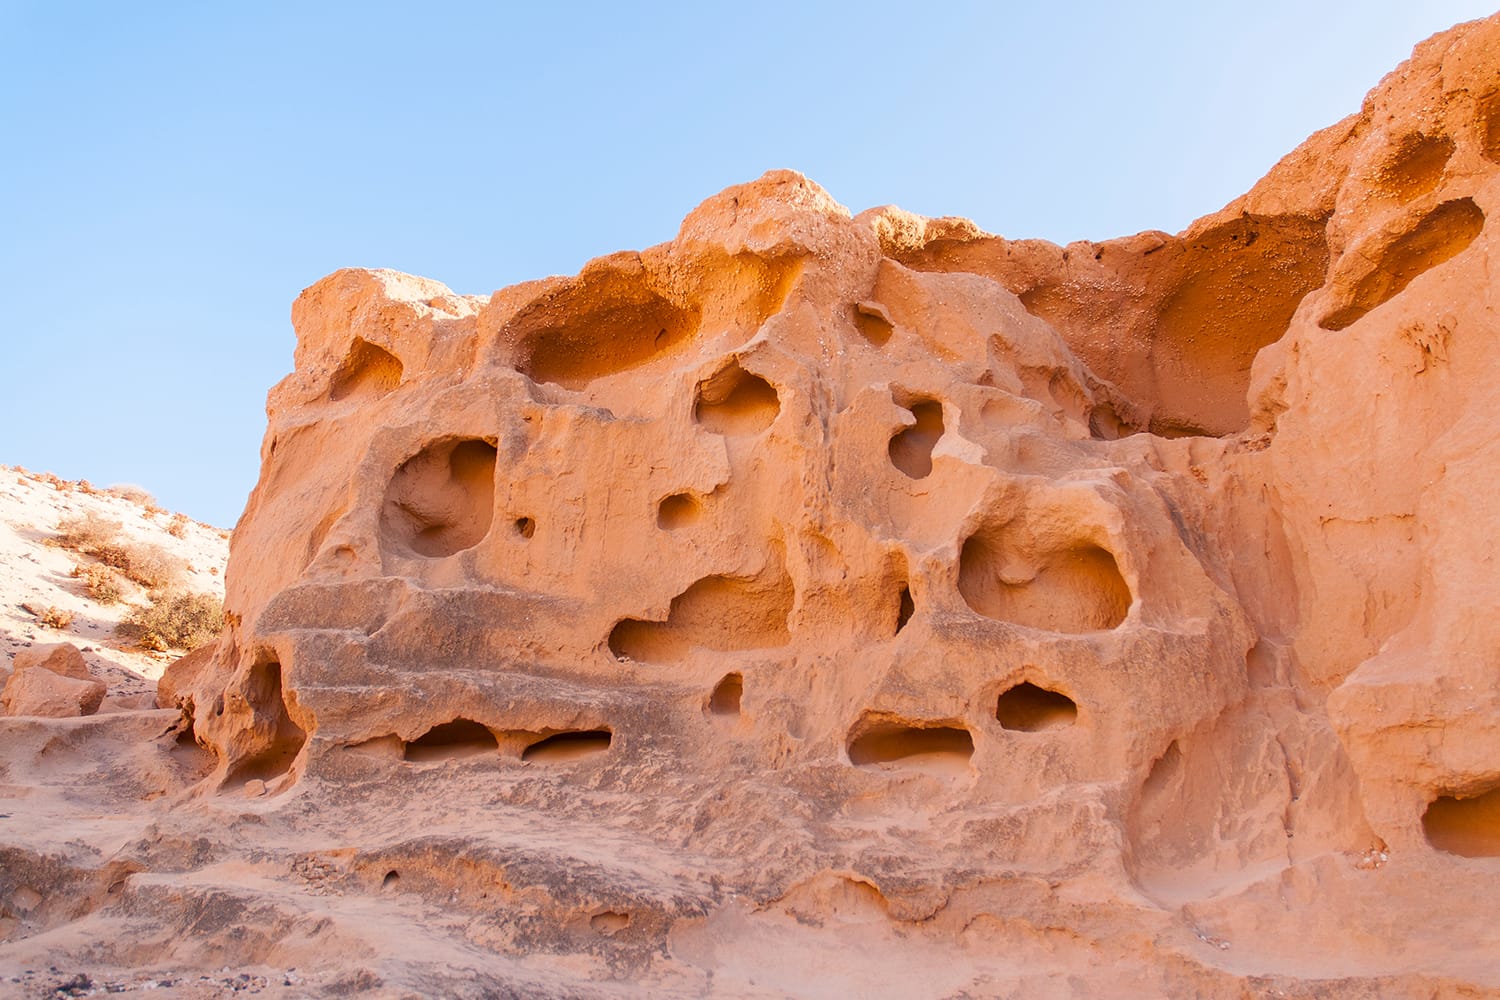 Smooth sandstone walls of Barranco de los Enamorados. Fuerteventura, Canary Islands